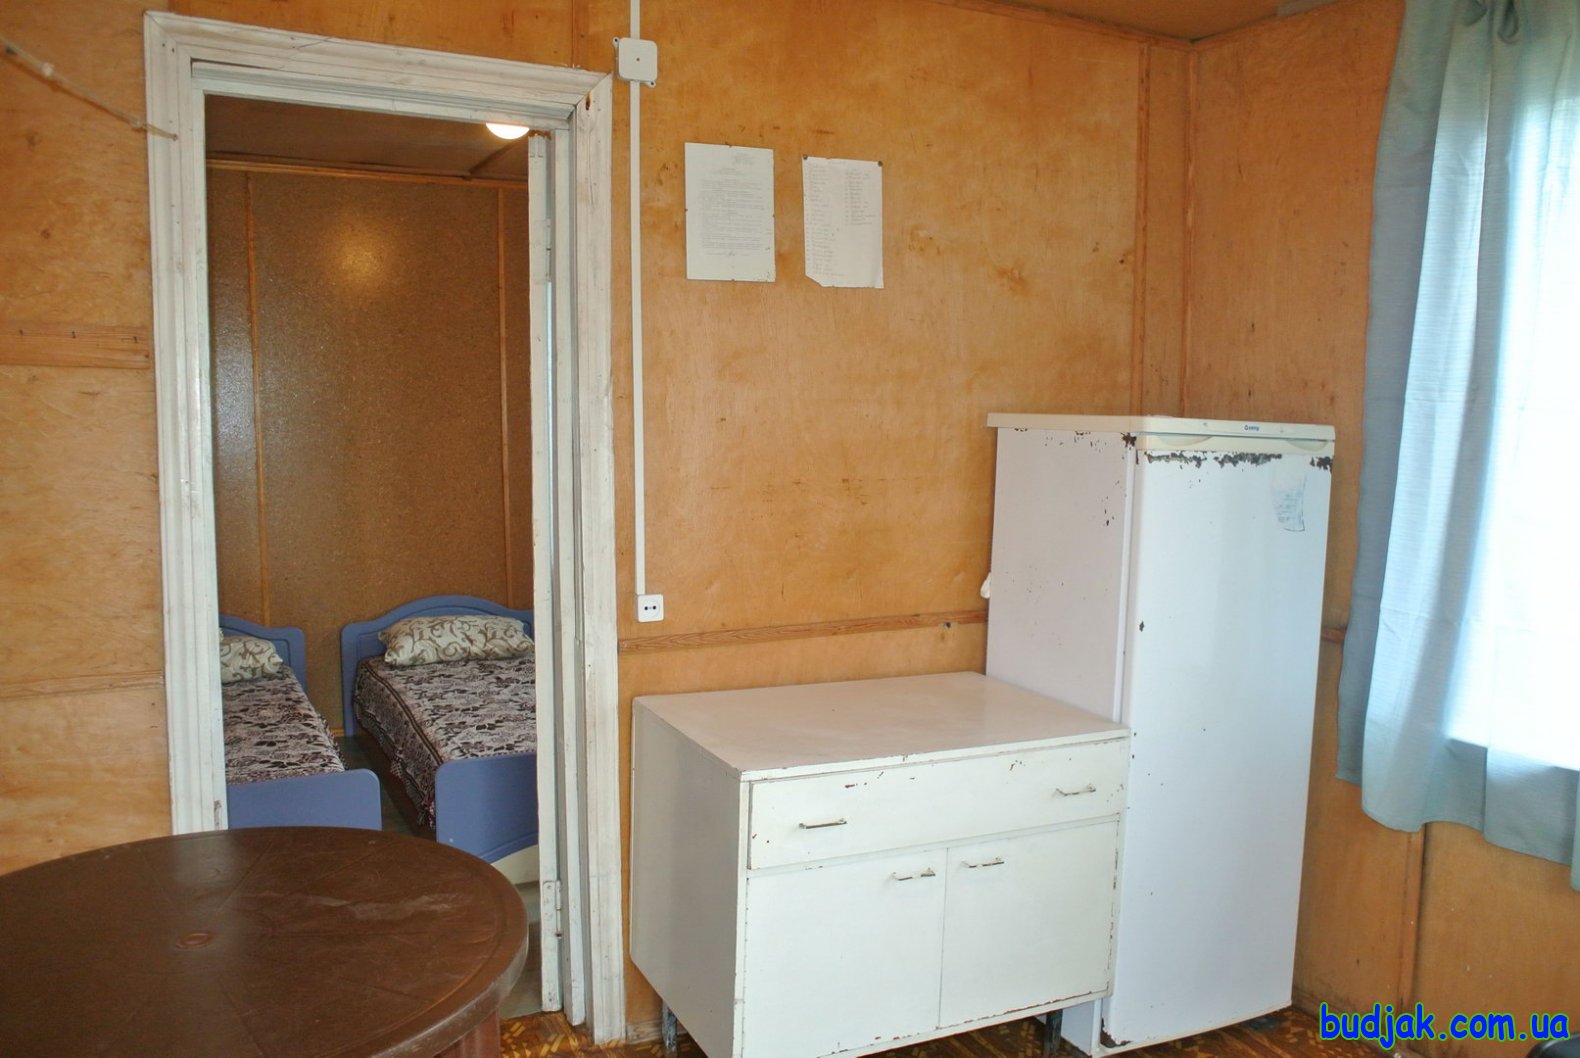 3-х местные домики летнего типа с кухней. База отдыха «Детский мир». Курорт Кантранка. Фото № 0318